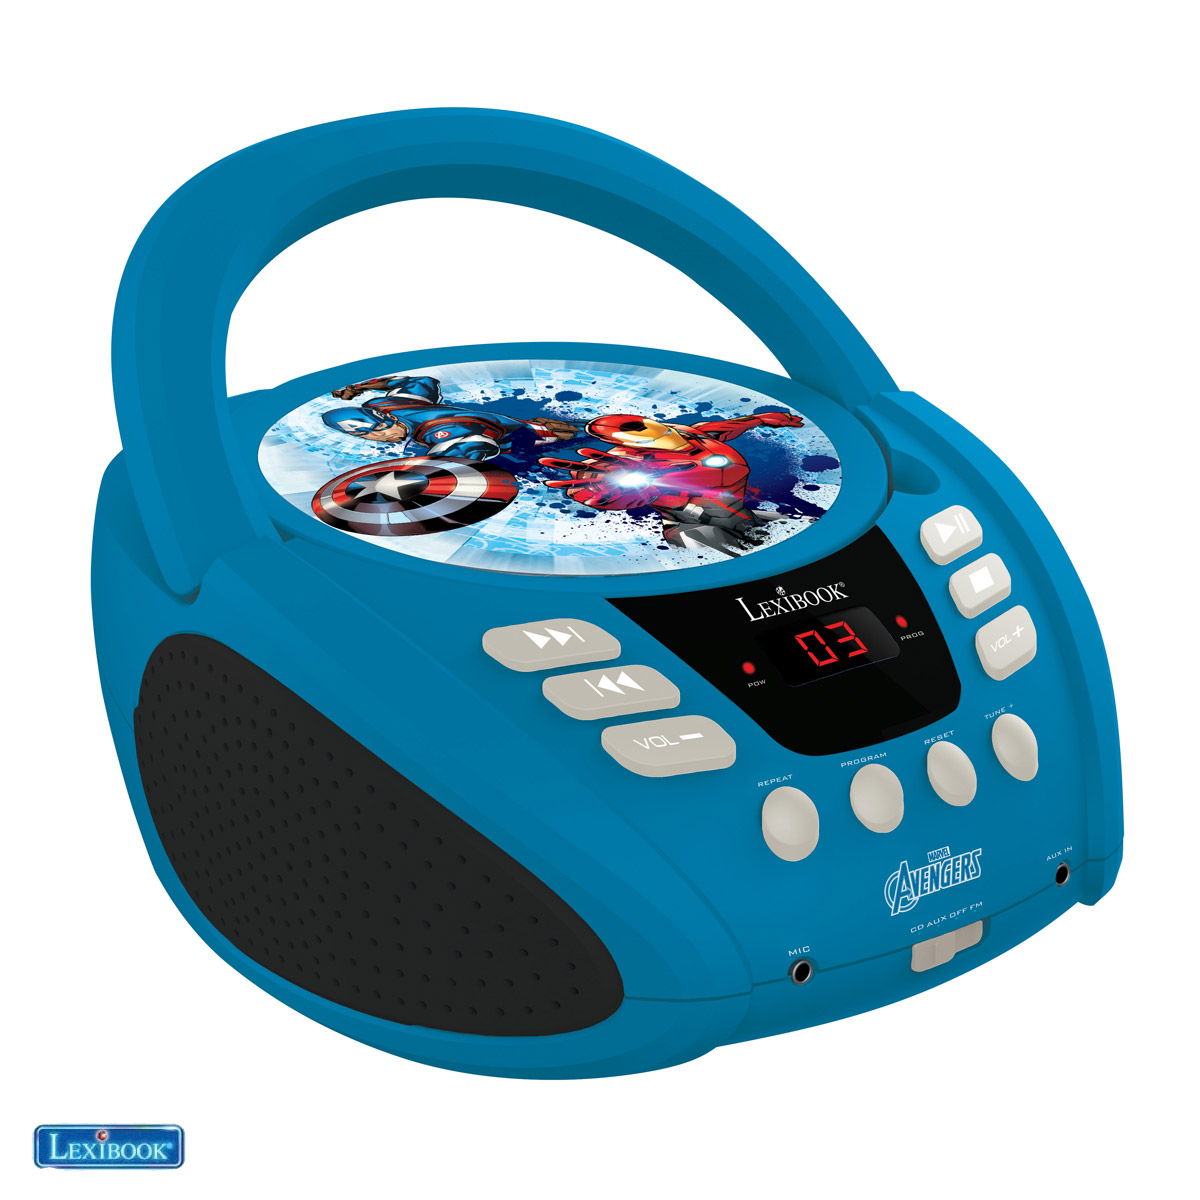 Lexibook - The Avengers Portable CD player with Mic Jack (RCD108AV)